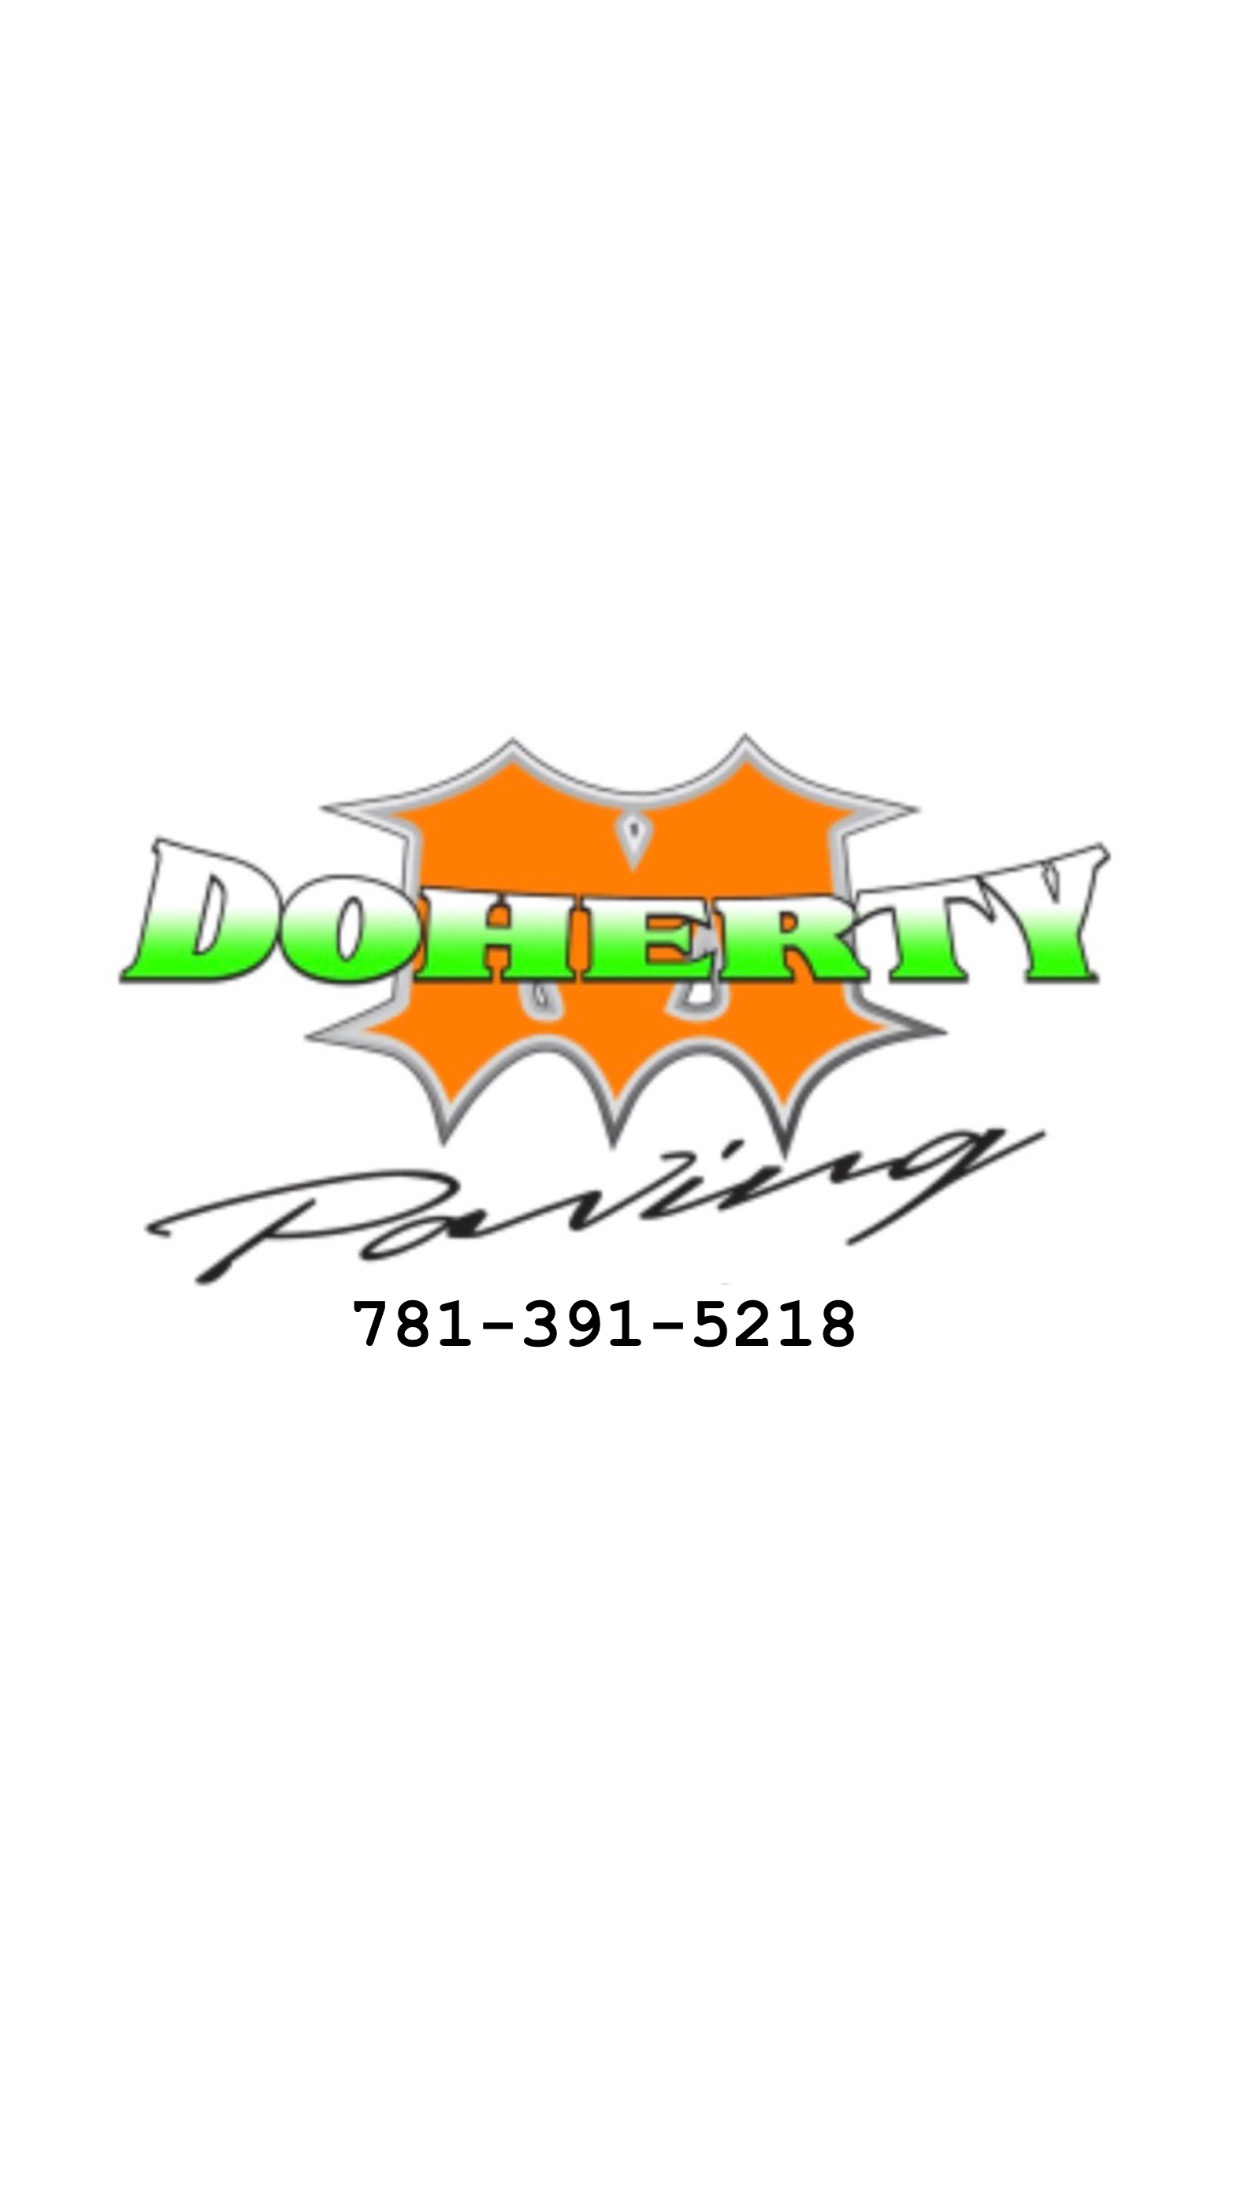 M.Doherty Paving Logo